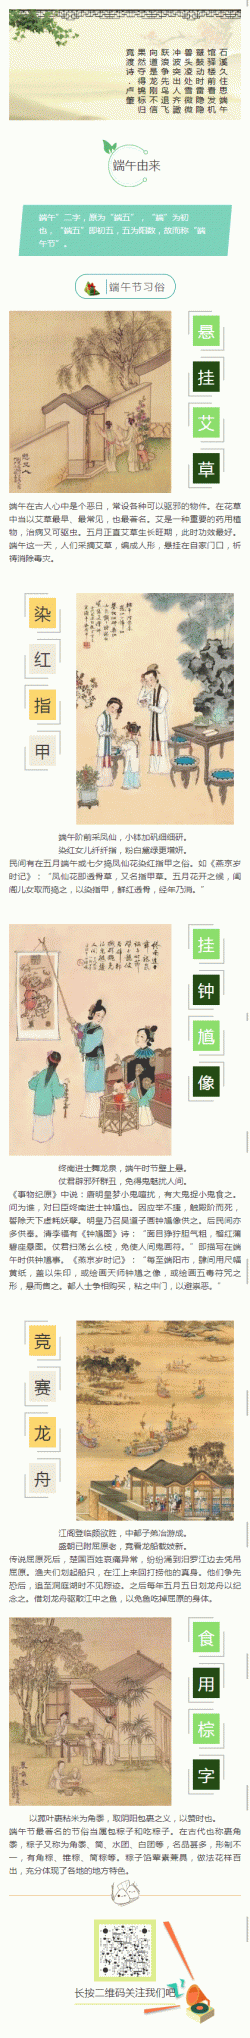 端午节中国传统节日微信文章模板